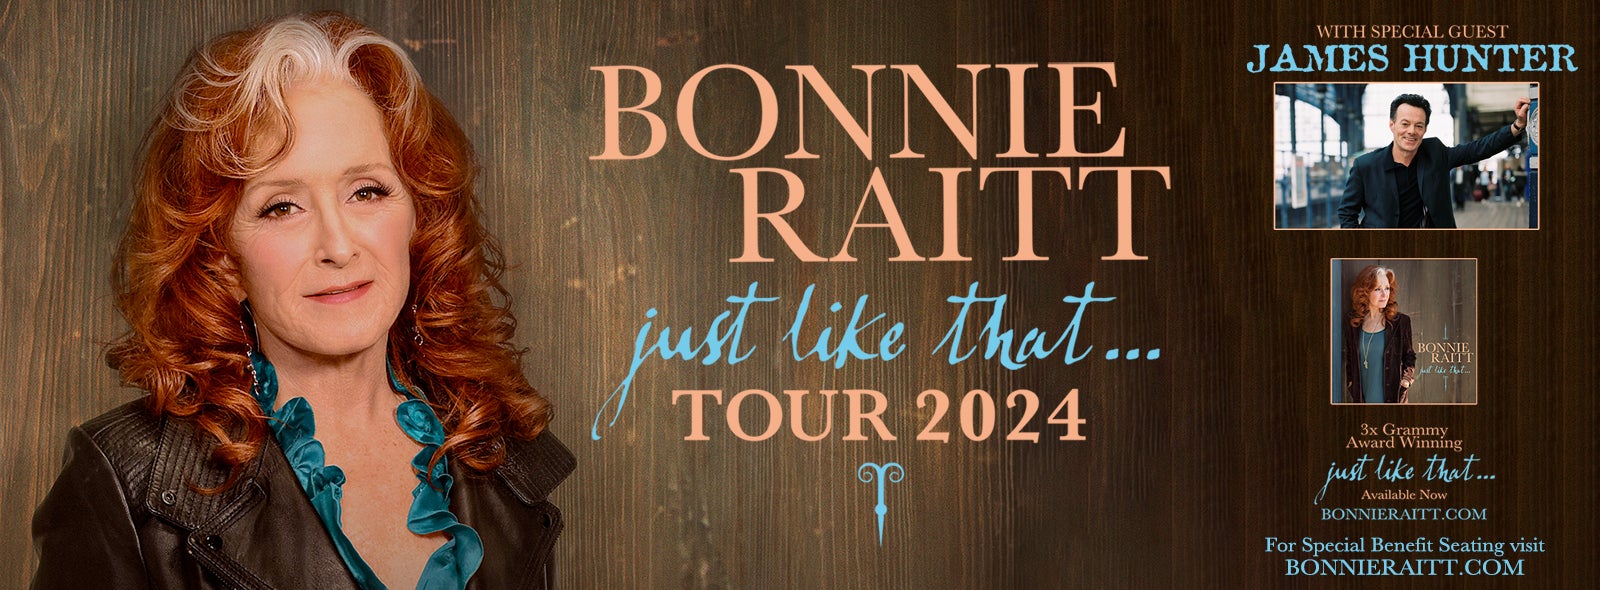 Experience Bonnie Raitt: Tour 2025 Live